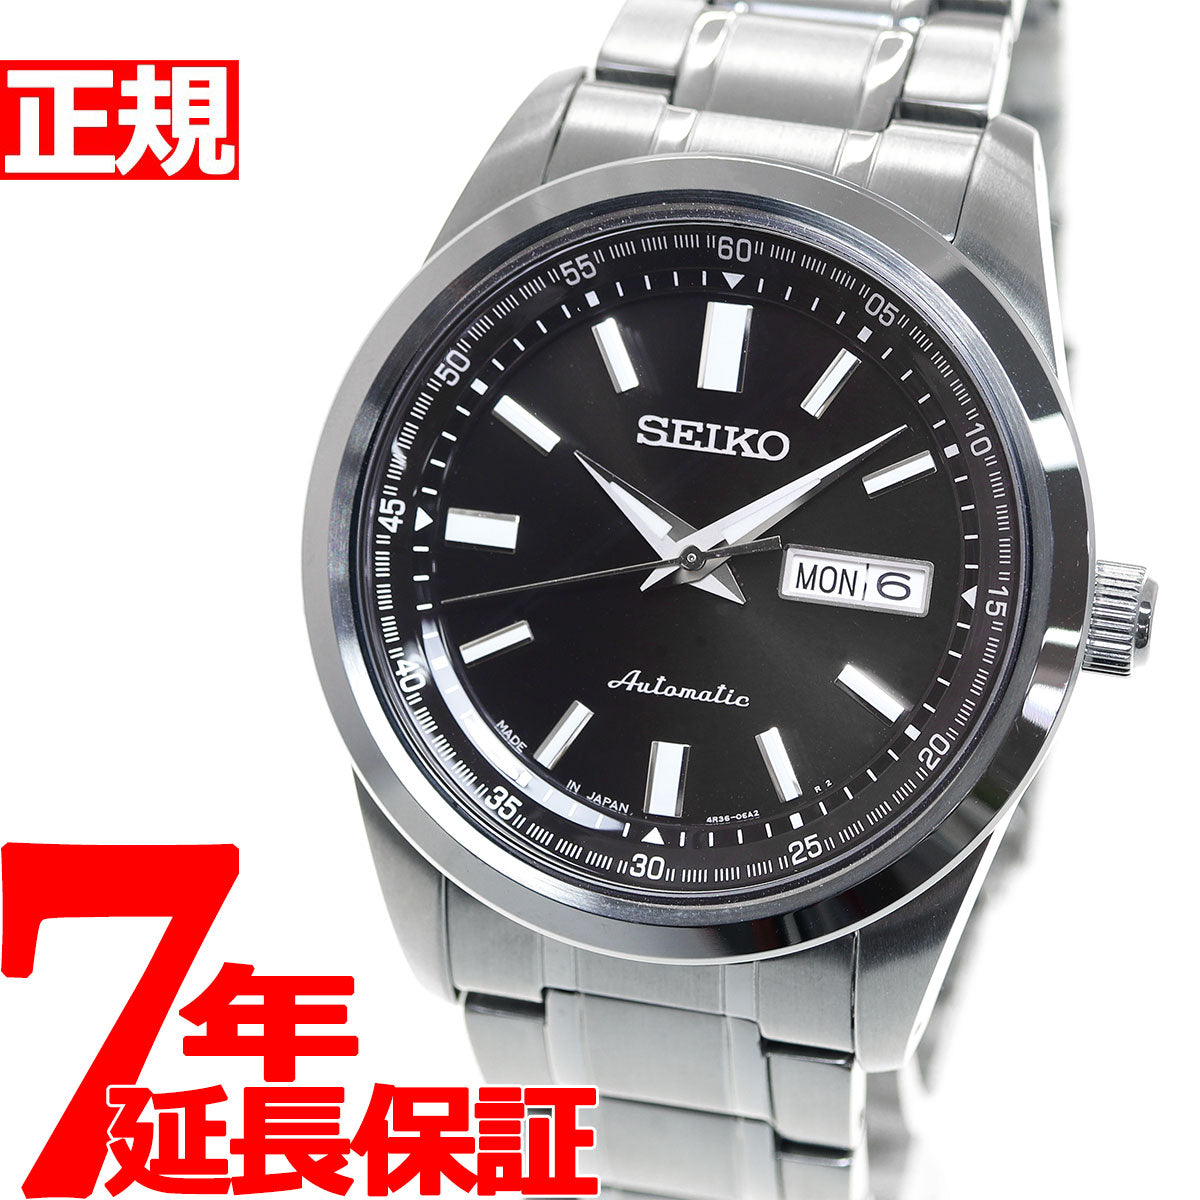 【国内正規品】新品 未使用品 セイコー SEIKO 腕時計 セイコーセレクション 自動巻き(手巻付き) Cal.4R36搭載  日本製 SARV004 メンズ 送料無料